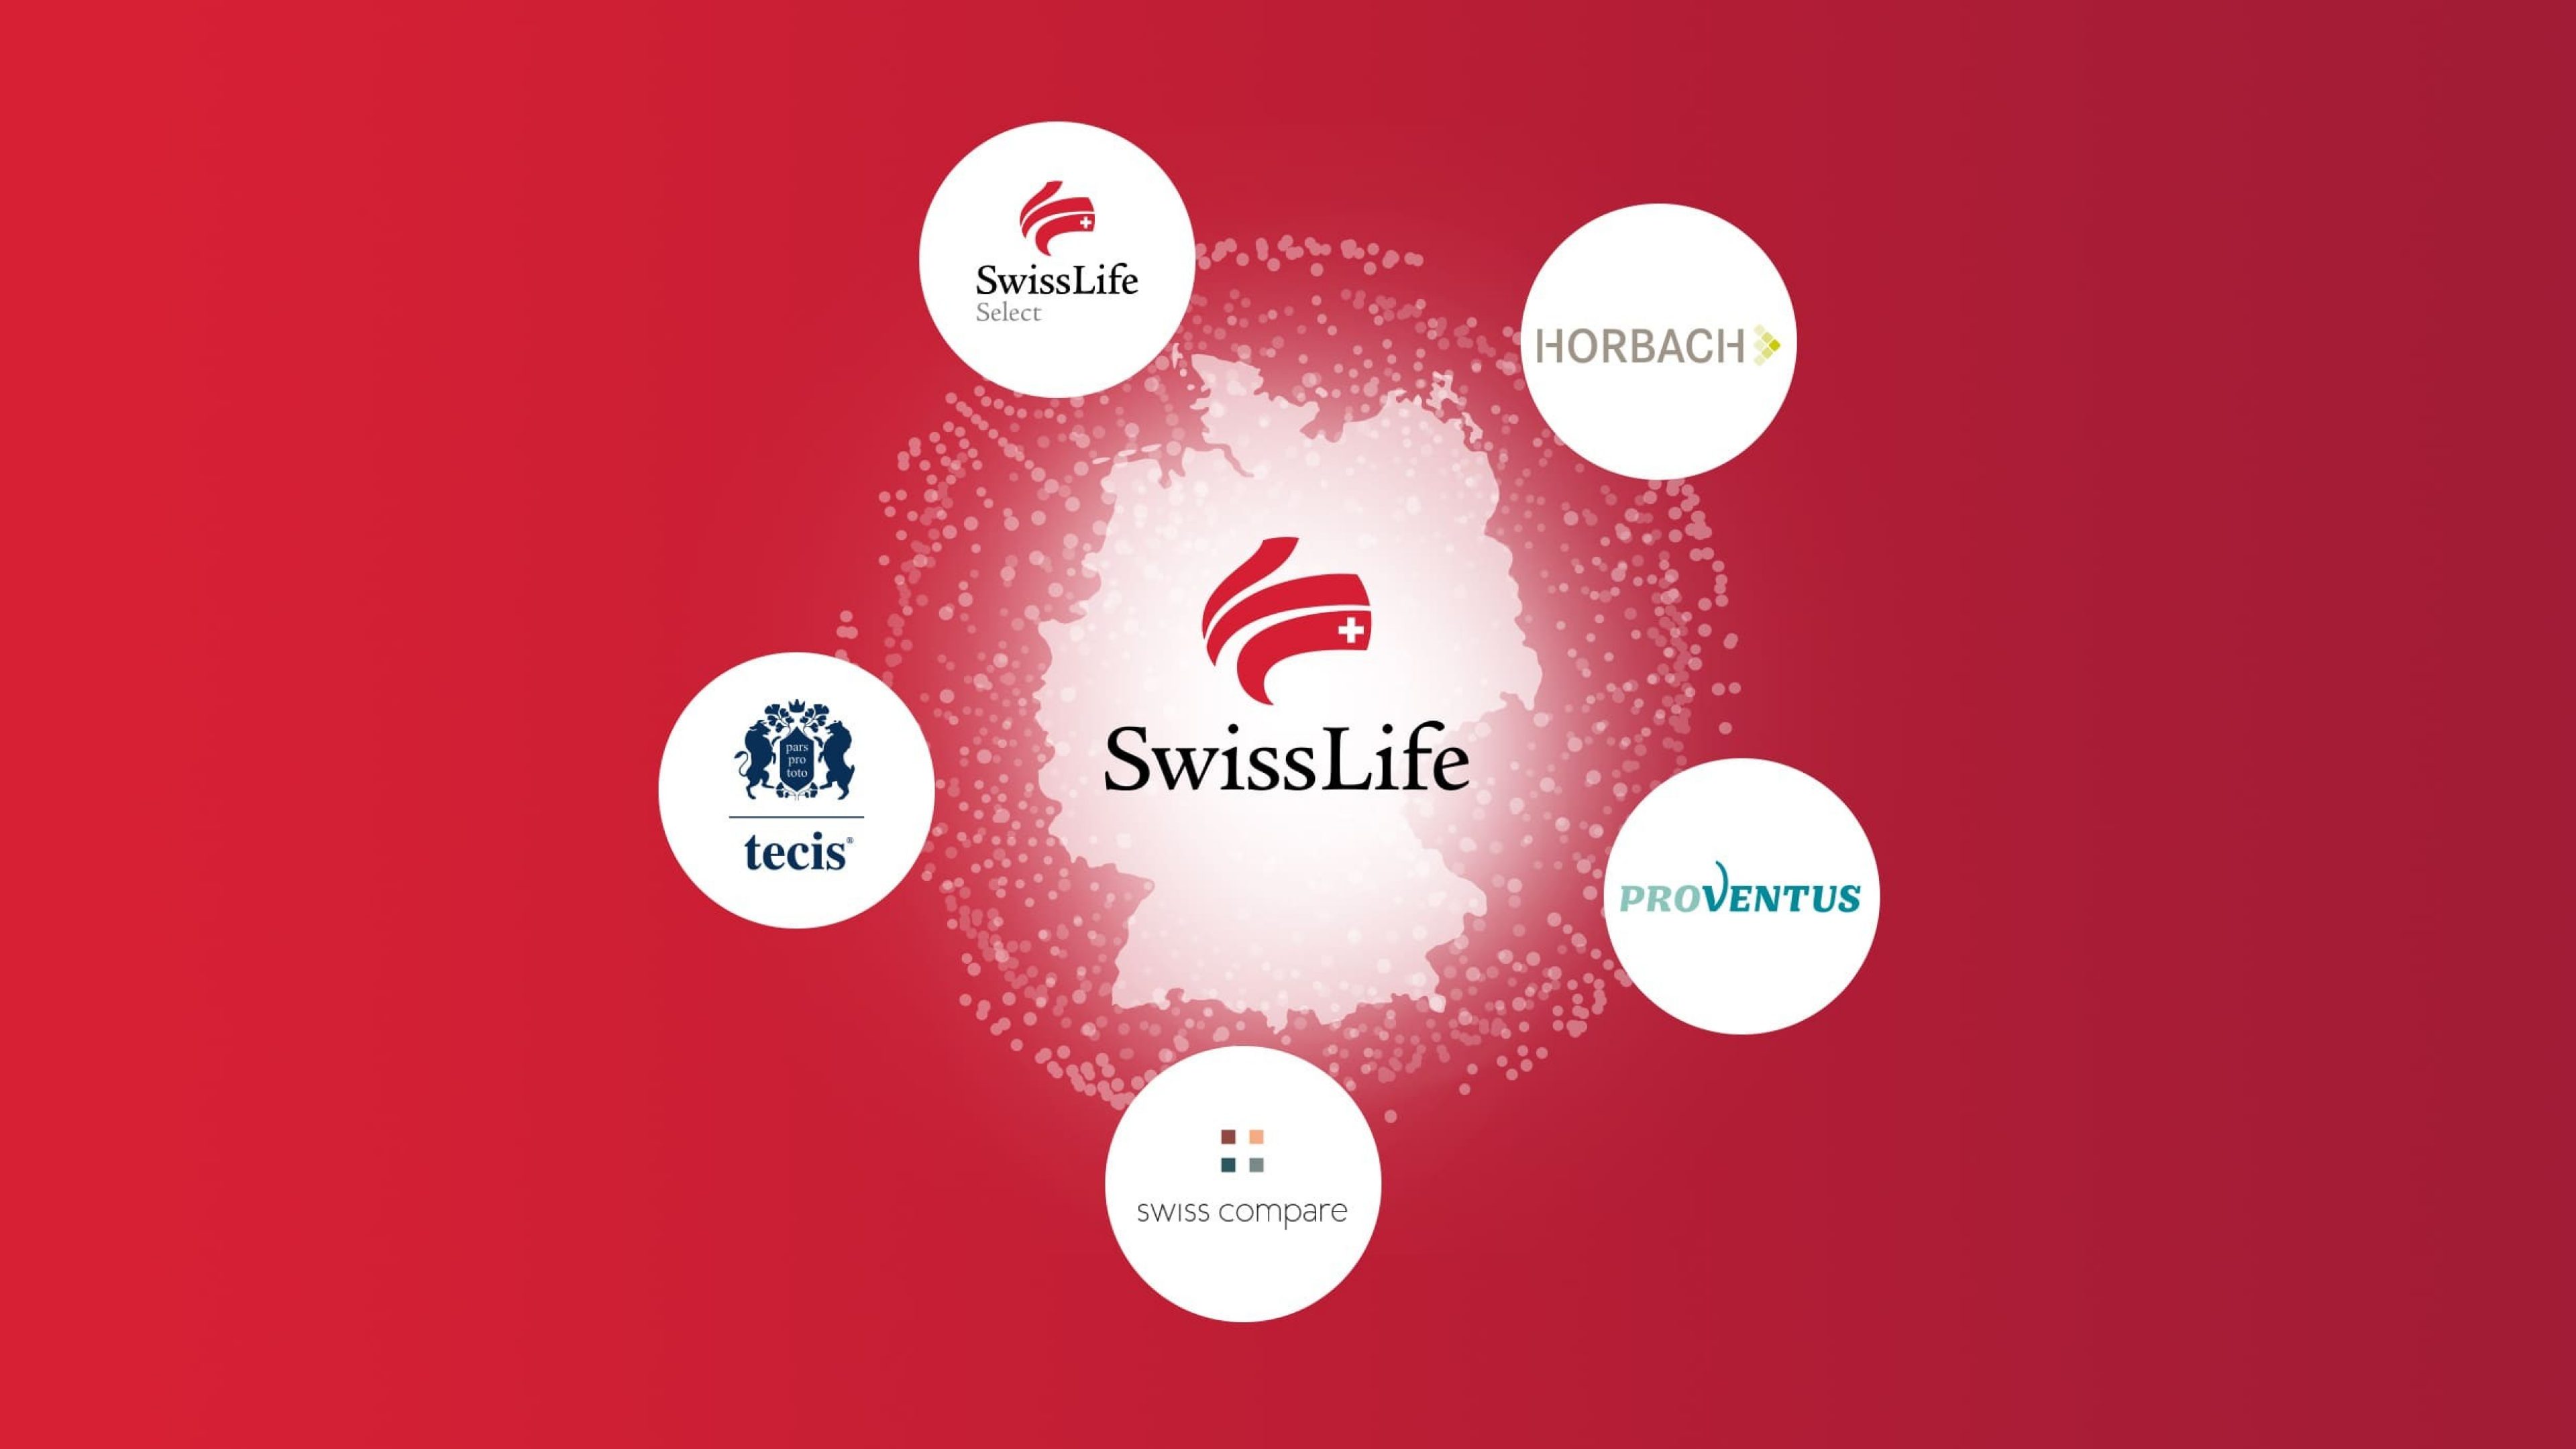 Swiss Life ist ein führender Anbieter von Finanz- und Vorsorgelösungen und tritt mit mehreren Marken auf dem deutschen Markt auf. Die Marken Swiss Life Select, tecis, HORBACH und Proventus stehen für eine ganzheitliche und persönliche Finanzberatung mit individuellen Lösungen nach dem Best-Select-Prinzip.